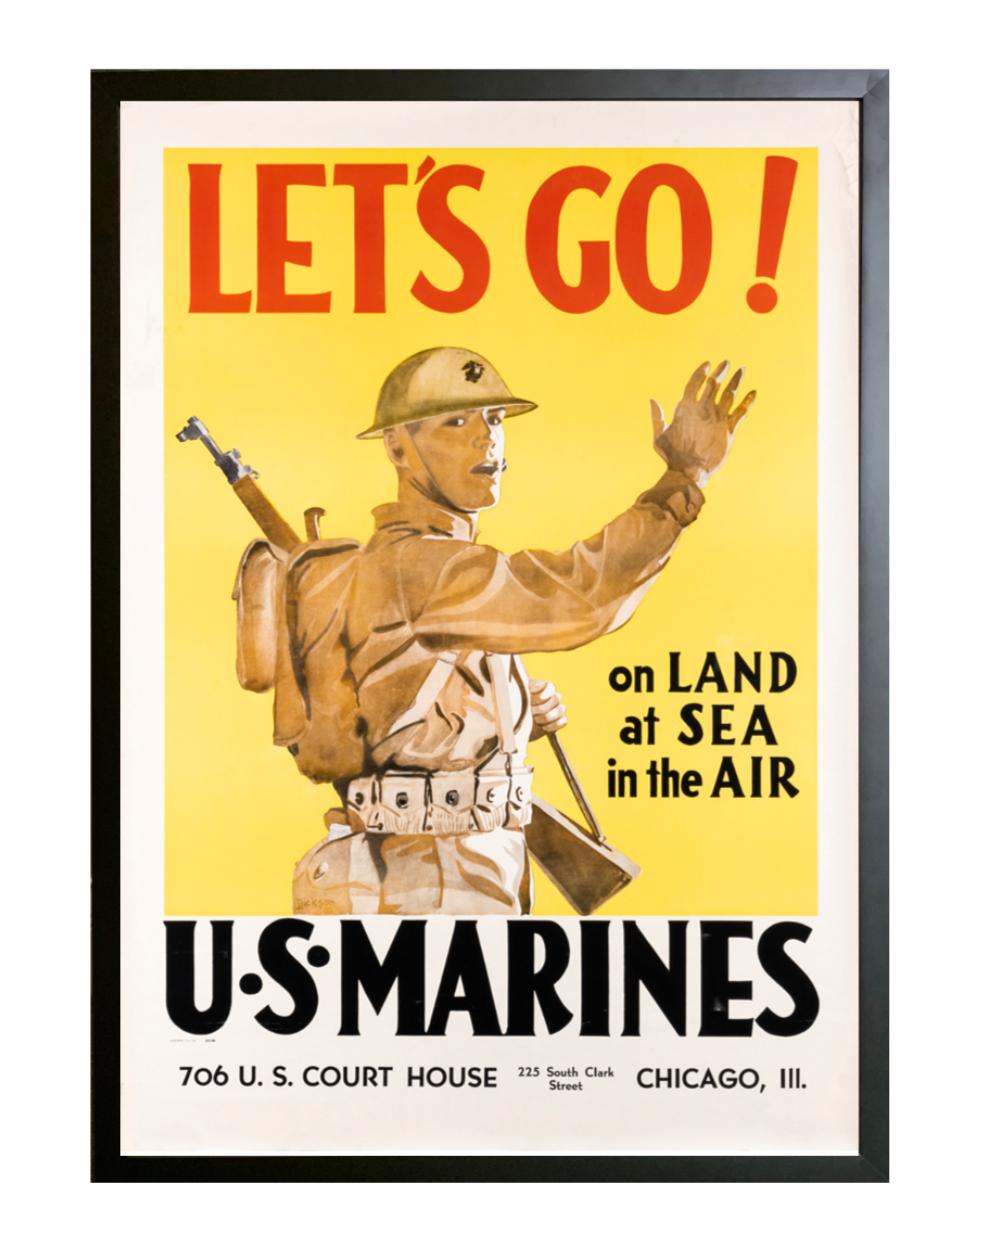 Dies ist ein originales Rekrutierungsplakat der Marines aus dem Zweiten Weltkrieg von Dickson aus dem Jahr 1941. Das Plakat zeigt einen uniformierten Marinesoldaten, der den Betrachter auffordert, ihm zu folgen. Der überzeugende Text 